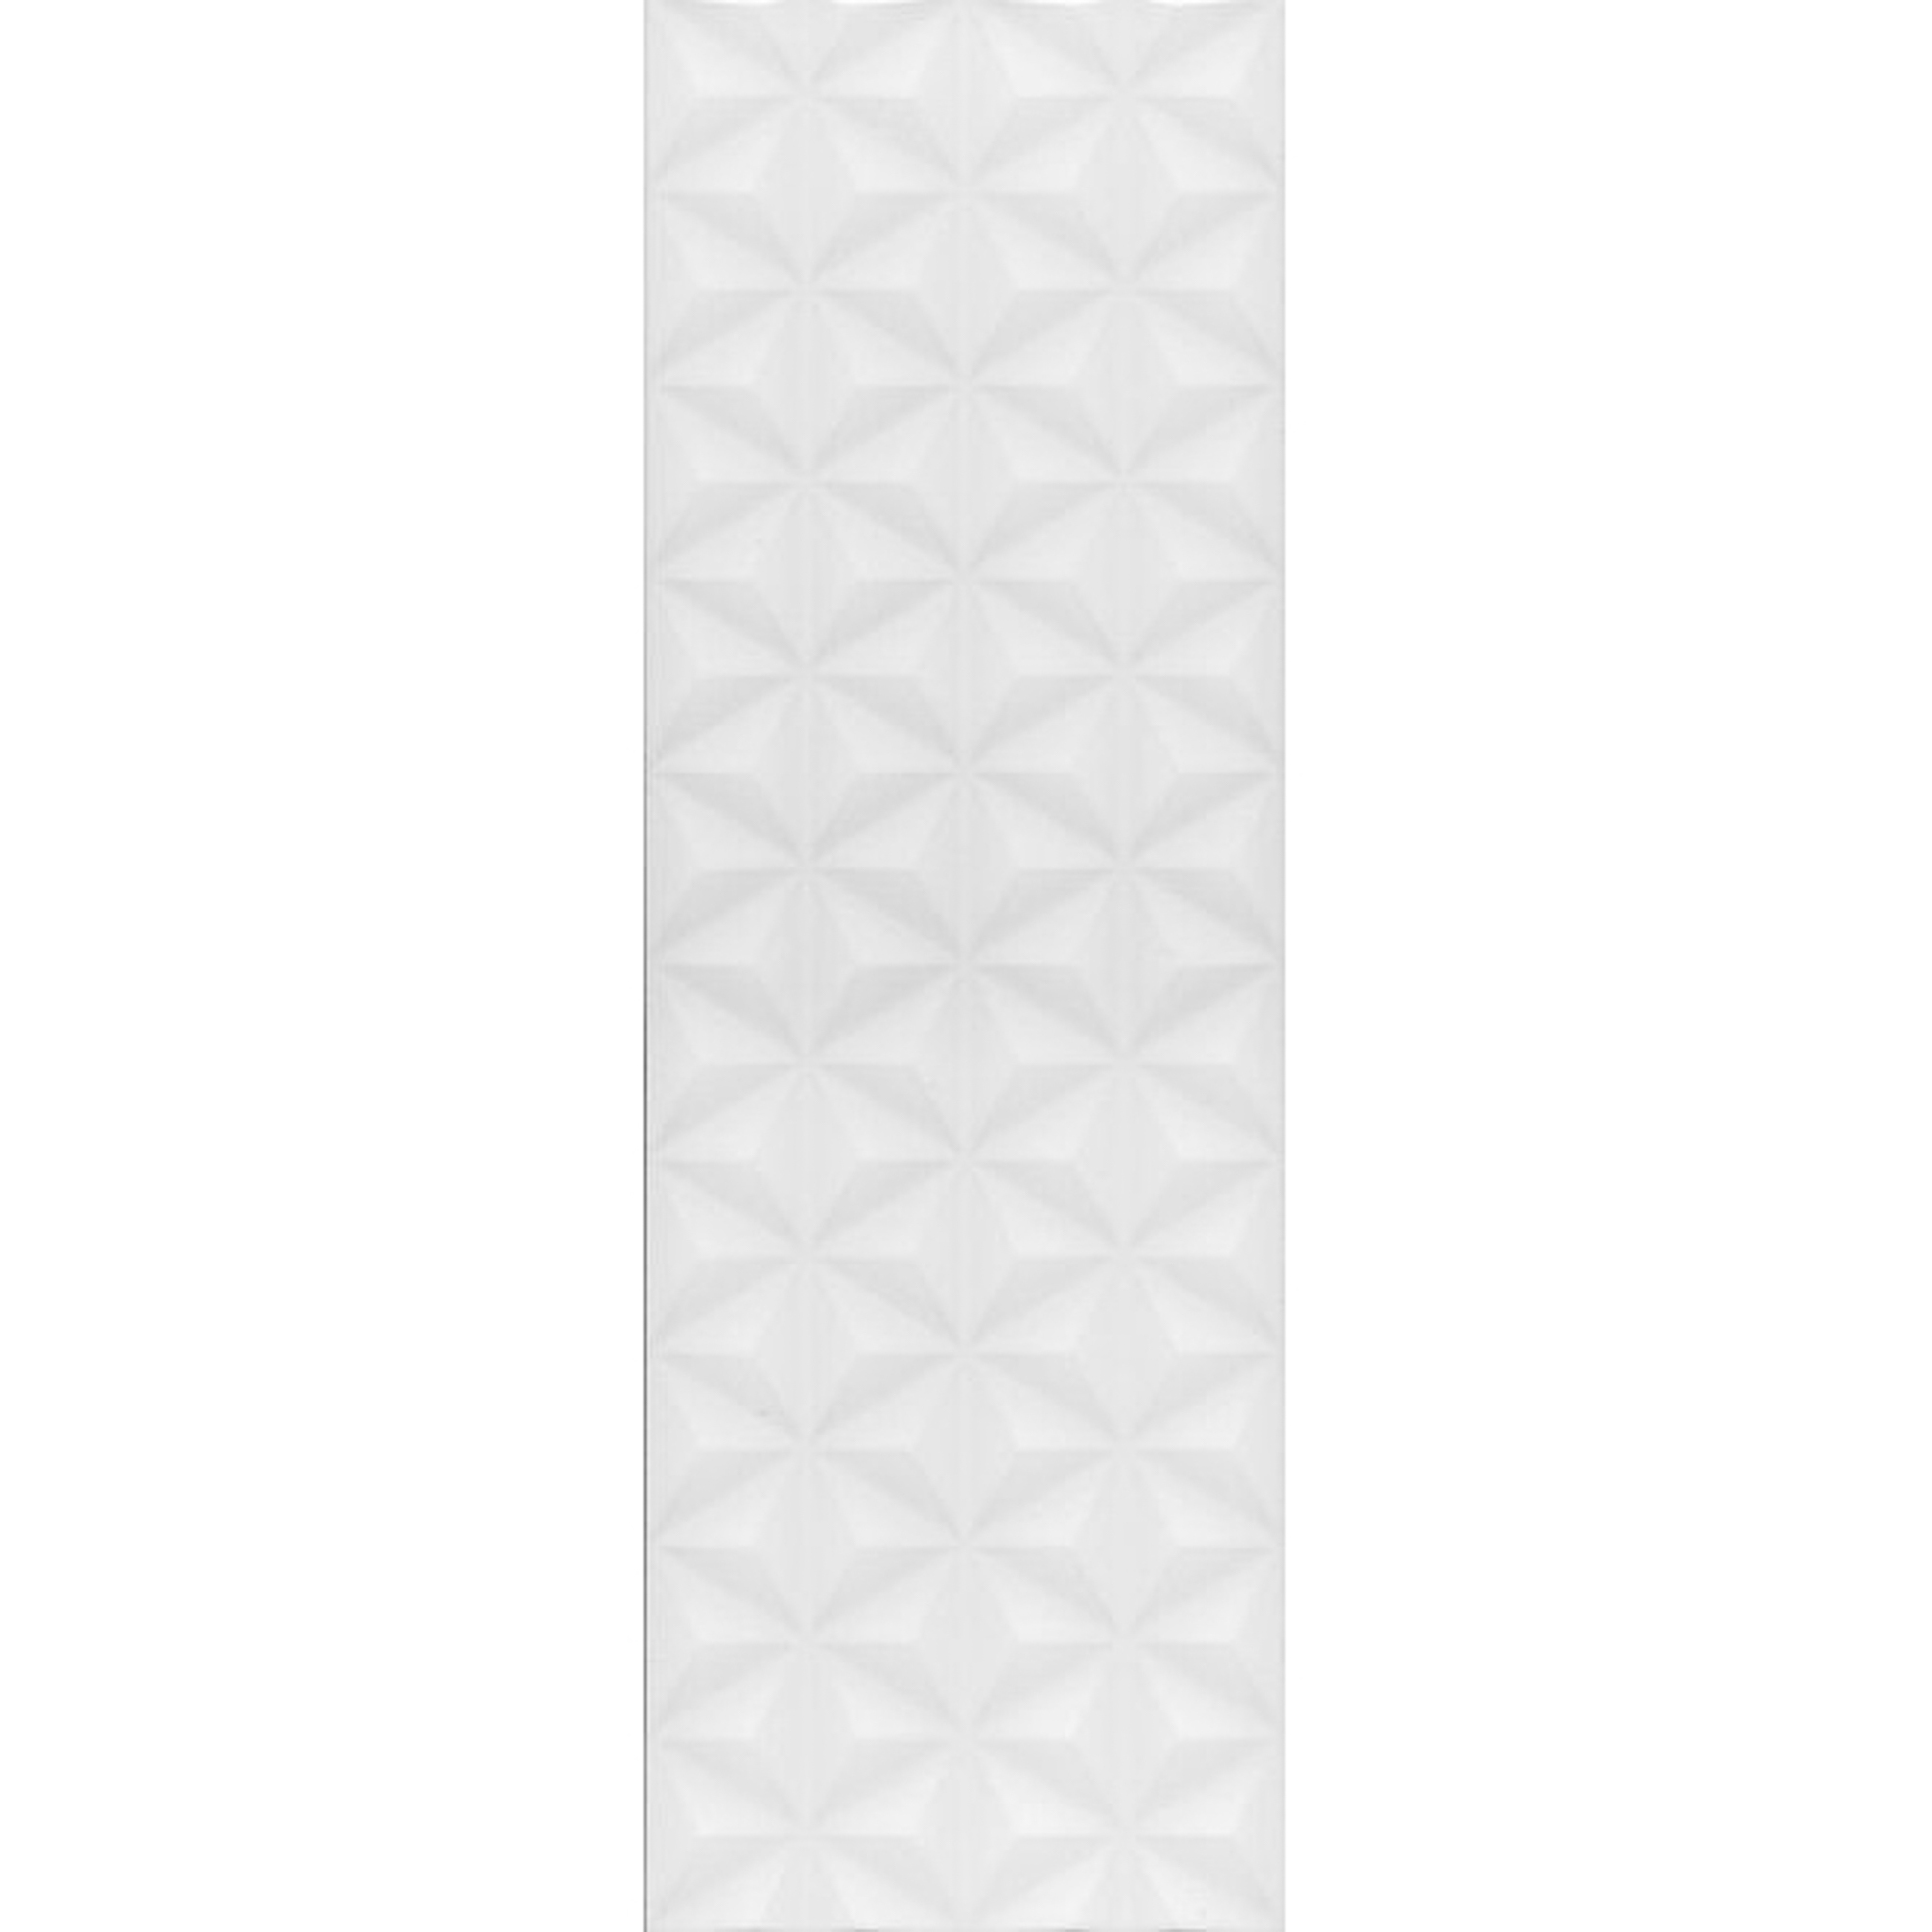 Плитка Kerama Marazzi Диагональ белая структура 25x75 см 12119R плитка потолочная формат 2602 белая 50х50 см 8 шт 2 м